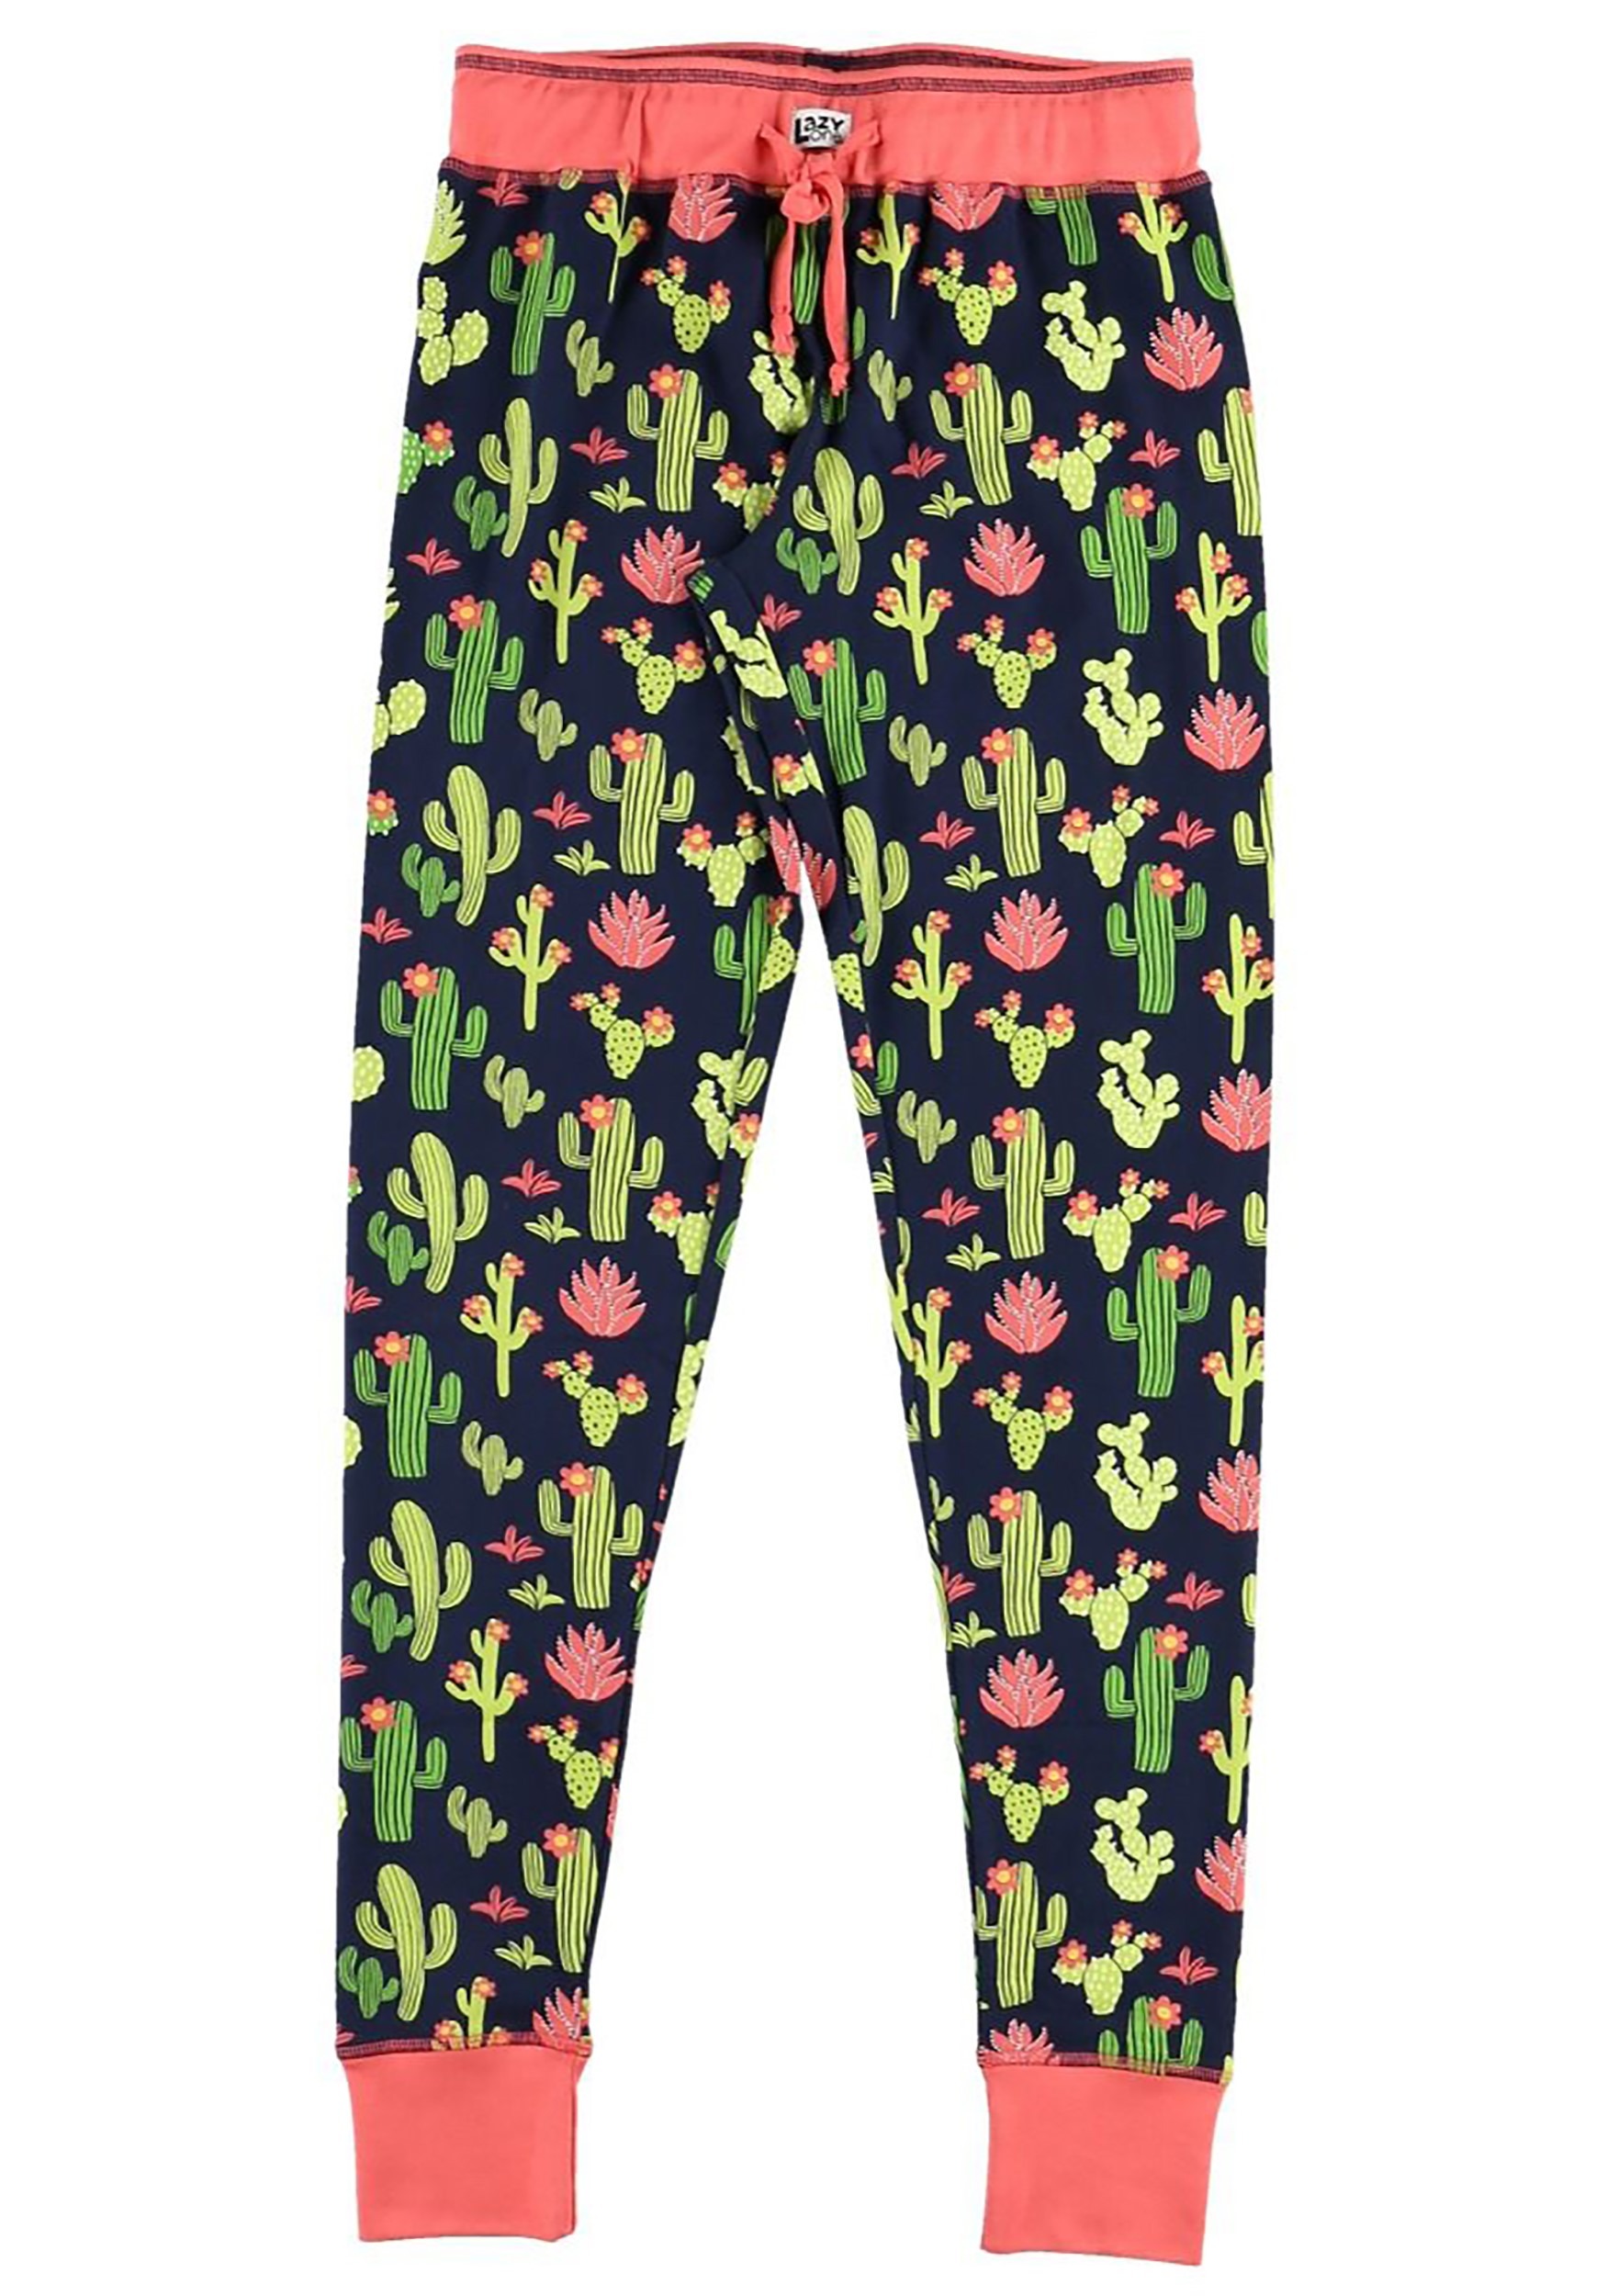 Cactus Print Women's Pajama Leggings